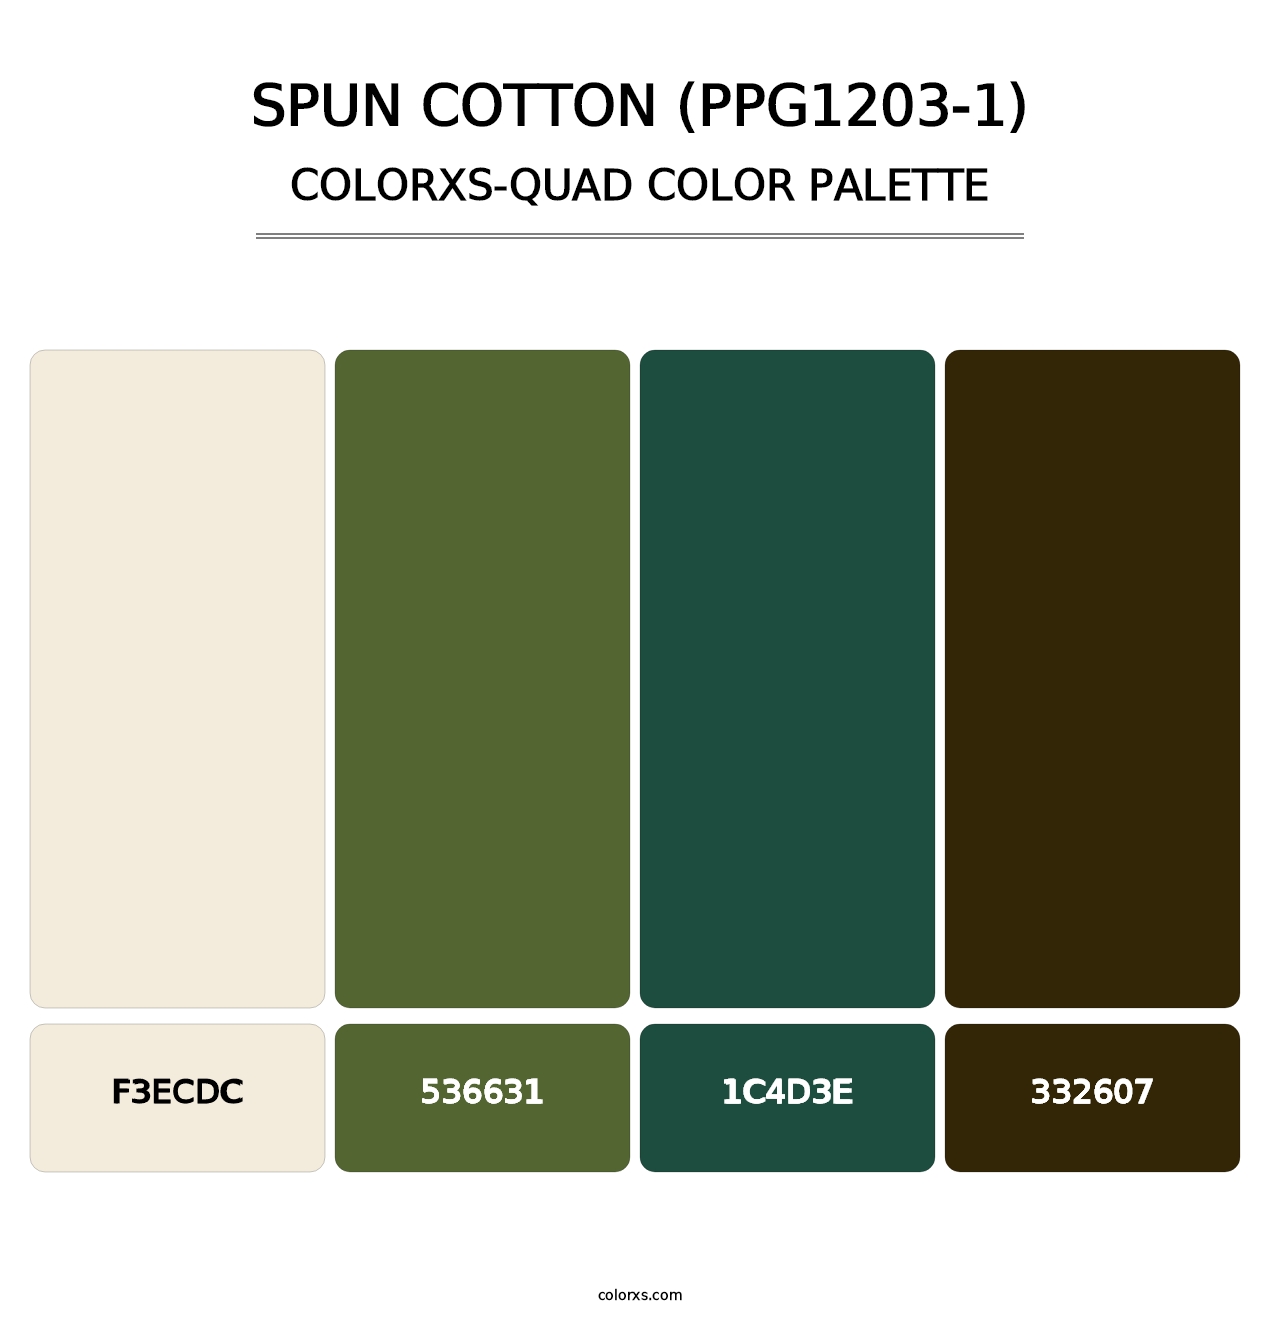 Spun Cotton (PPG1203-1) - Colorxs Quad Palette